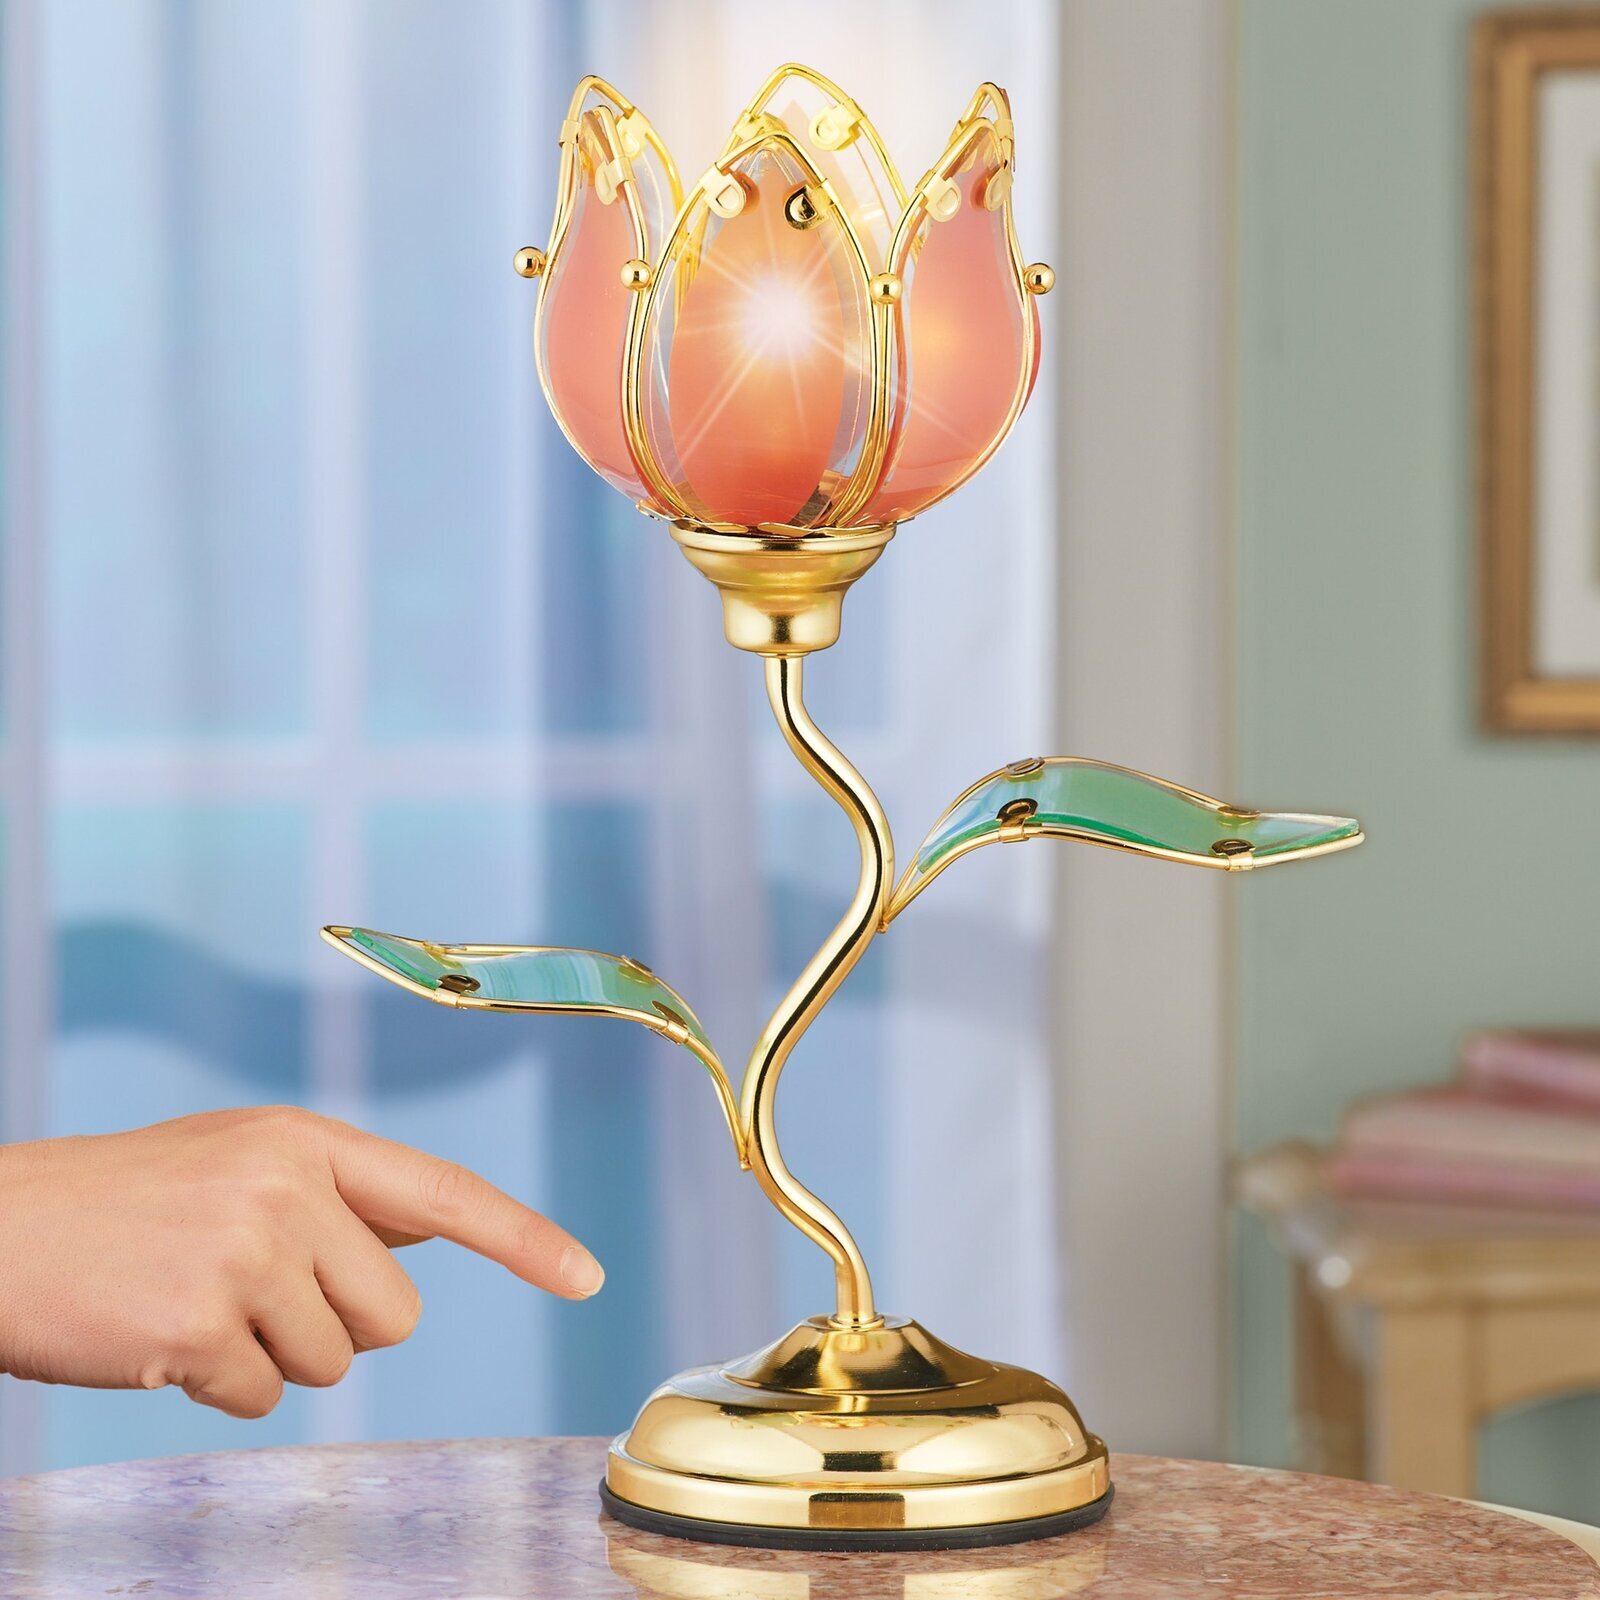 Overzicht gat Kinderachtig Flower Touch Lamps - Ideas on Foter